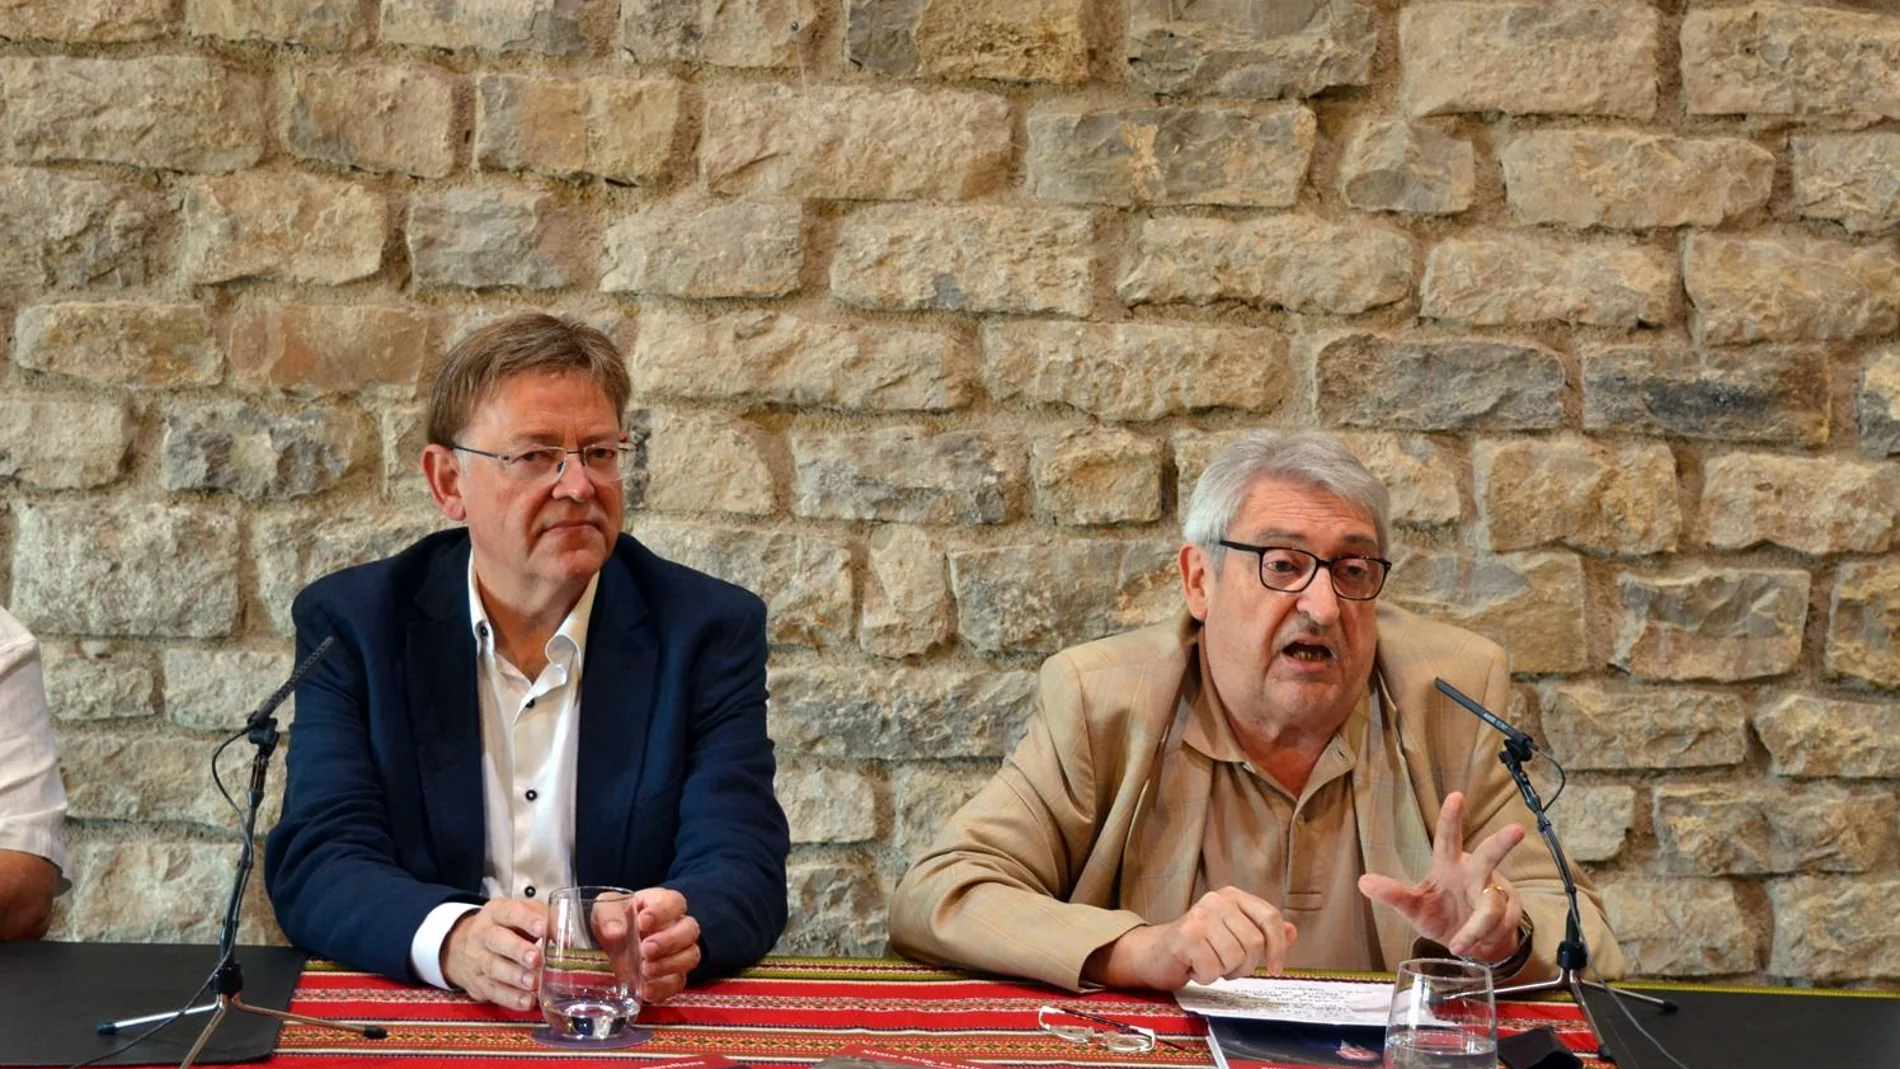 El presidente de la Generalitat asistió ayer a la presentación del libro «Ximo Puig, la mirada morellana», escrito por el exdiputado y periodista Manuel Milián Mestre